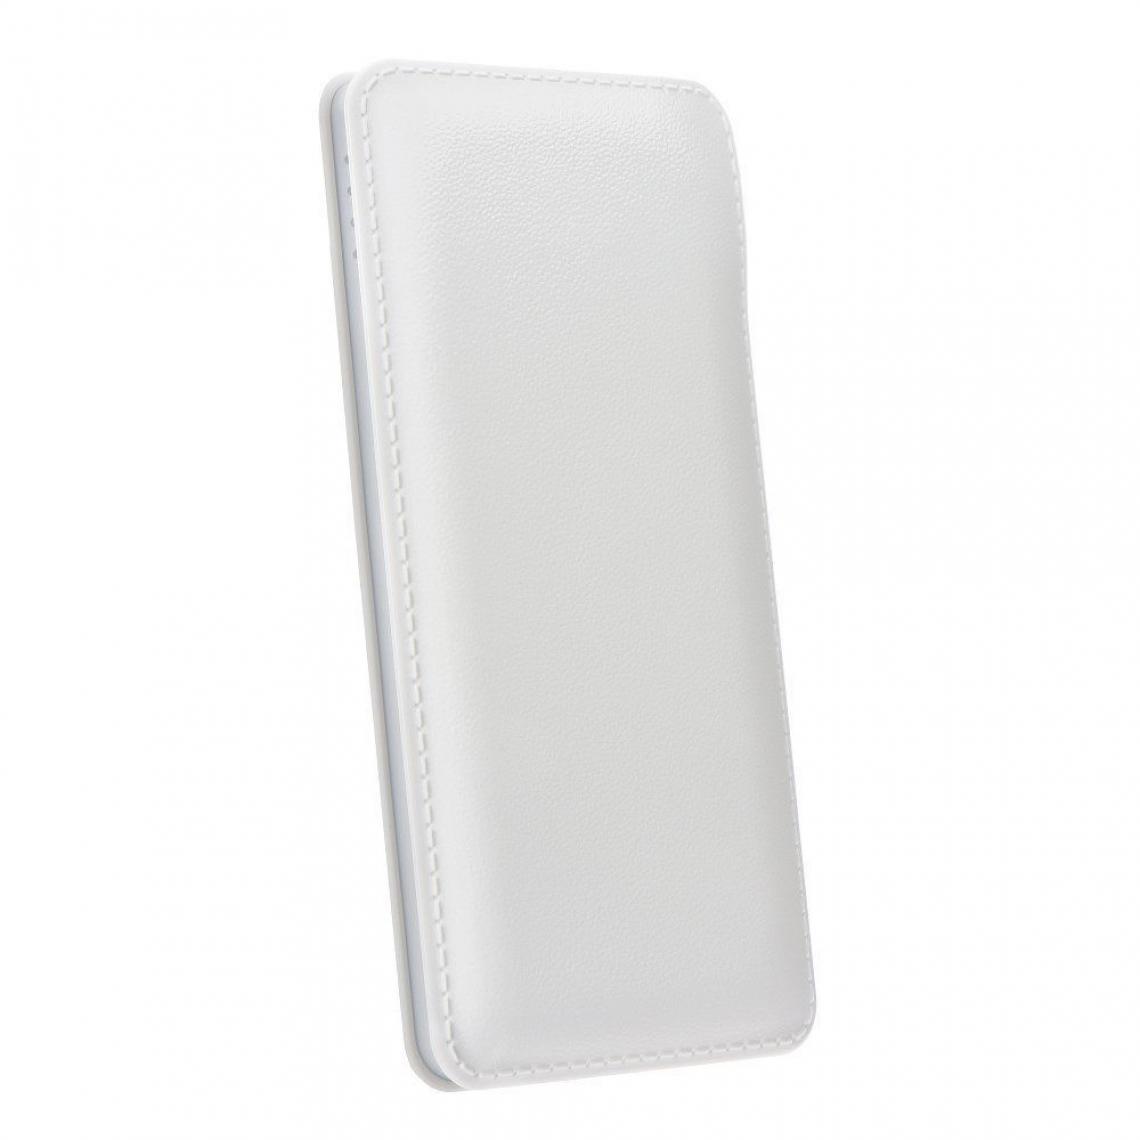 Ozzzo - Chargeur batterie externe 30000 mAh powerbank ozzzo blanc pour Samsung Galaxy M10S - Autres accessoires smartphone